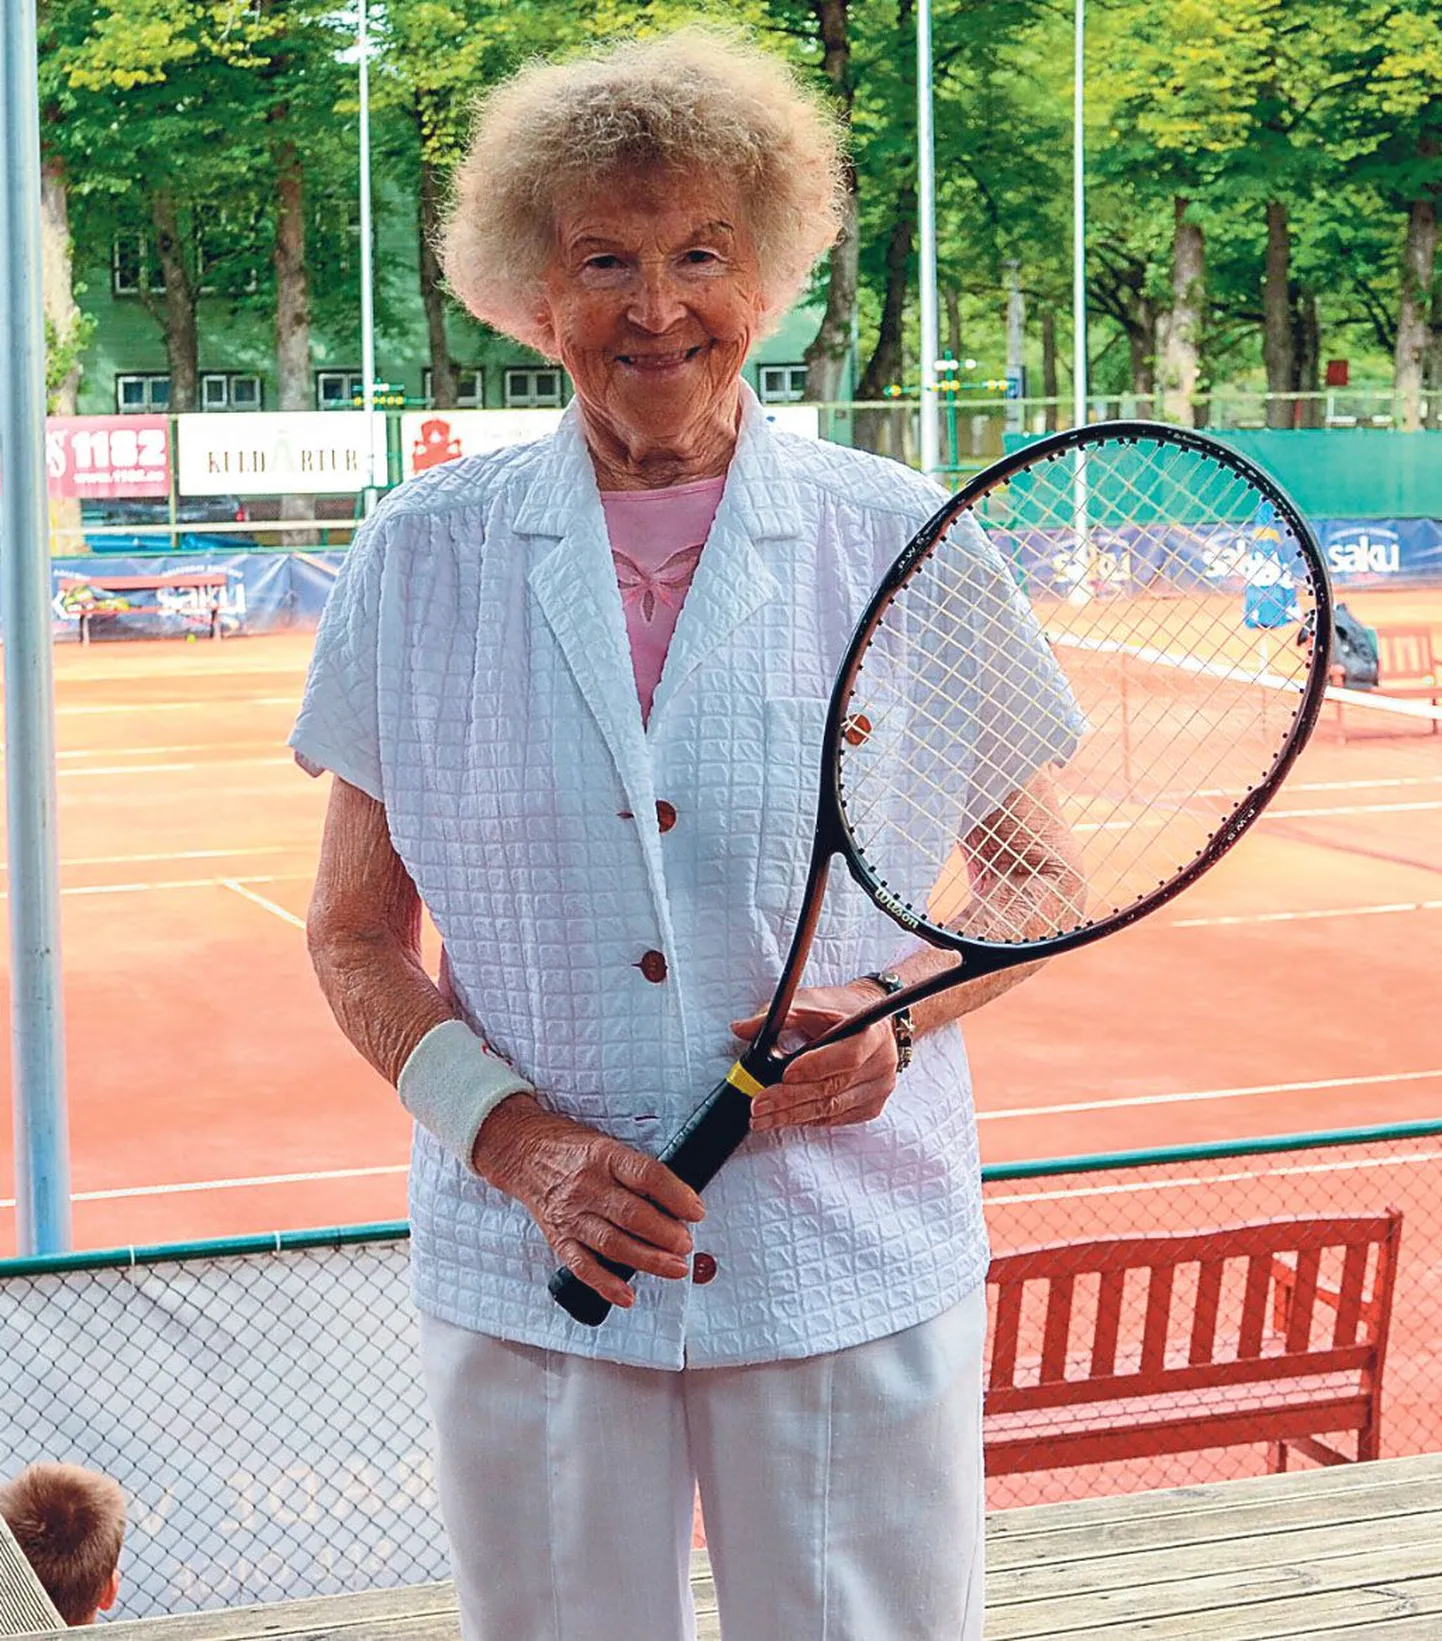 Vähe sellest, et Aino Issak on kõrgele vanusele vaatamata jätkuvalt tubli tennisemängija, kannab nüüd ka üks Pärnu tenniseväljak tema nime.